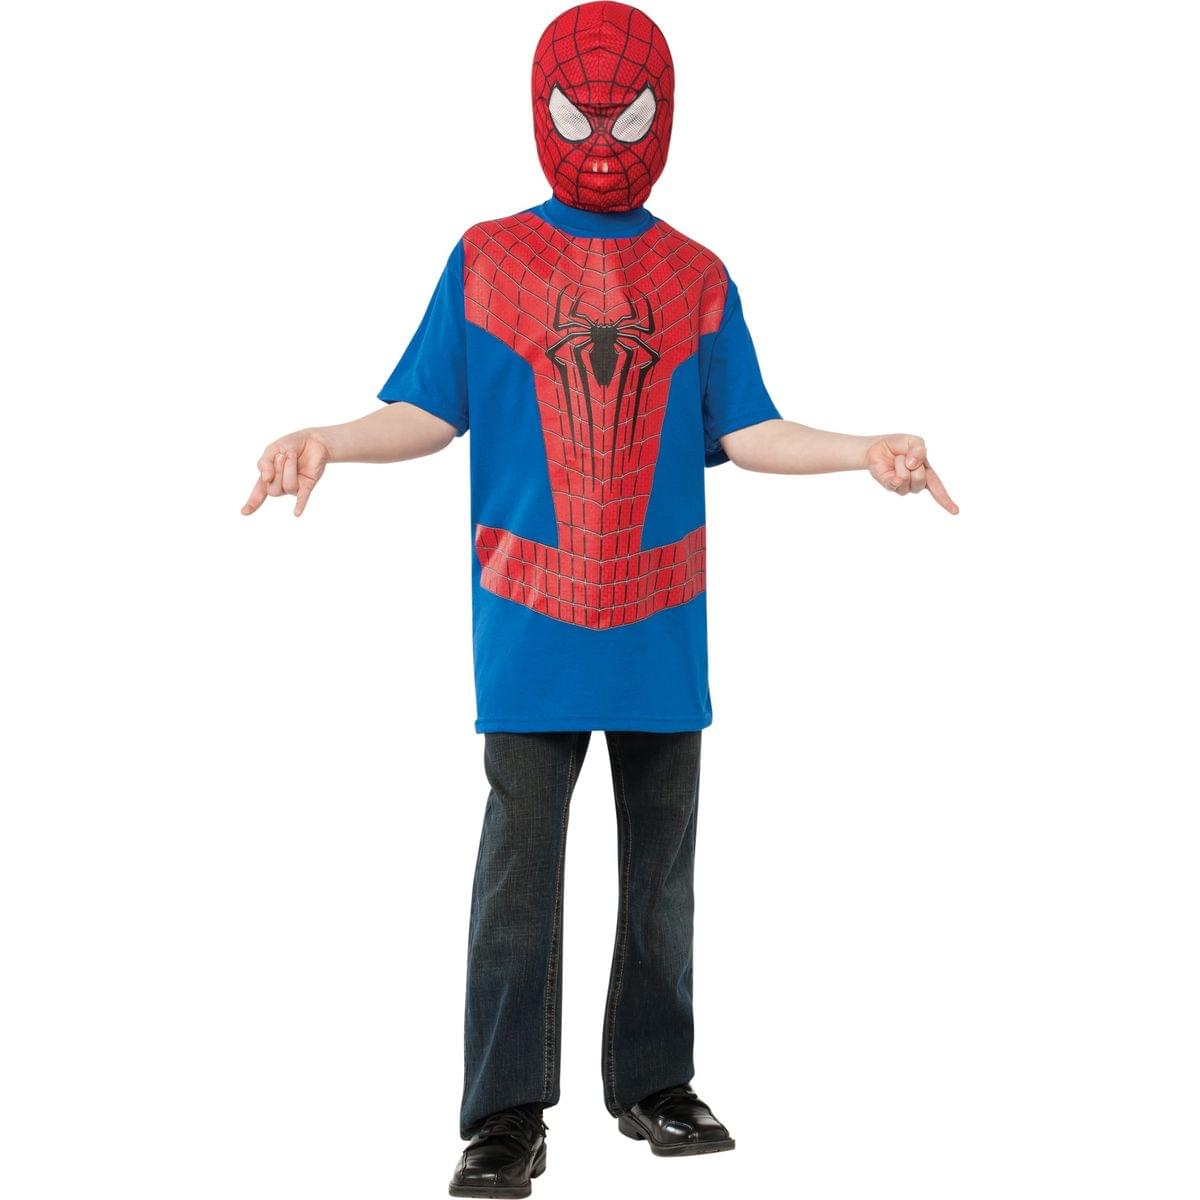 Amazing Spider-Man 2 Spider-Man T-Shirt Child Costume